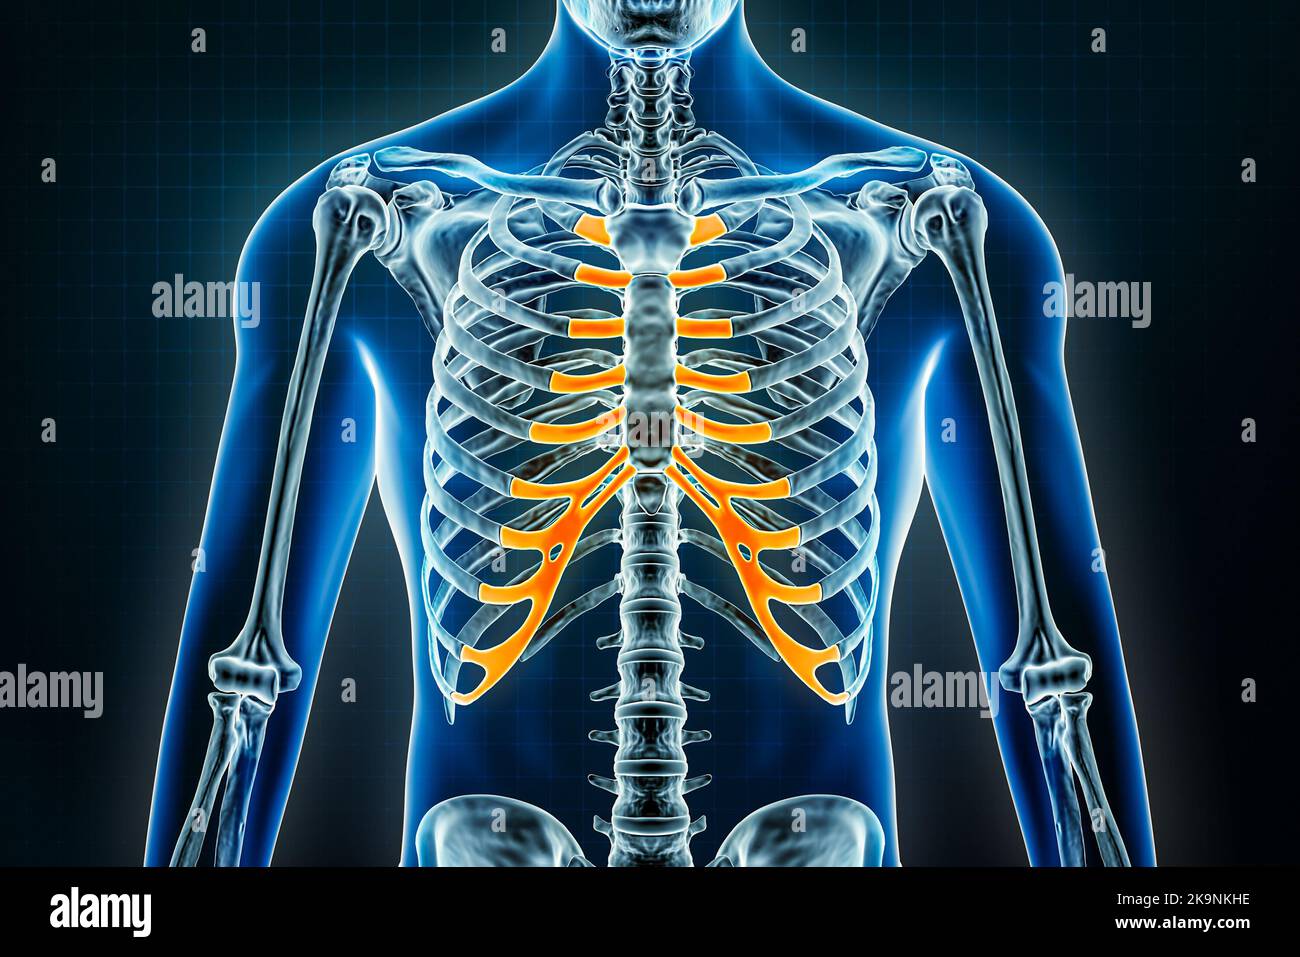 Röntgenaufnahme des Costalknorpels. Osteologie des menschlichen Skeletts oder der Knochen 3D Darstellung. Anatomie, Medizin, Wissenschaft, Biologie, Gesundheitskonzepte. Stockfoto